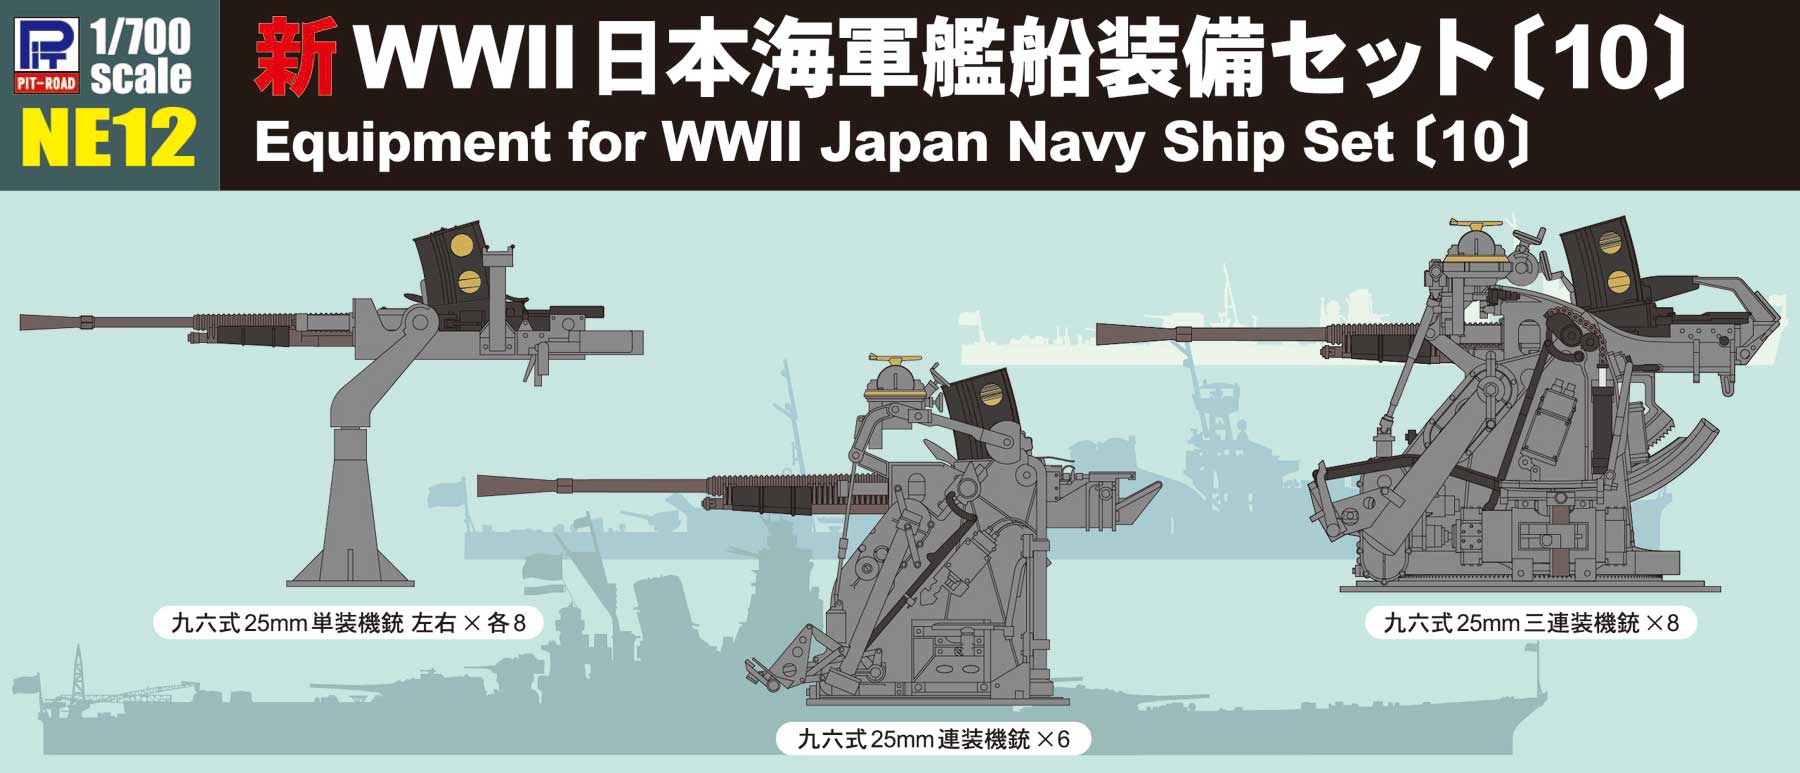 日本軍装備セット